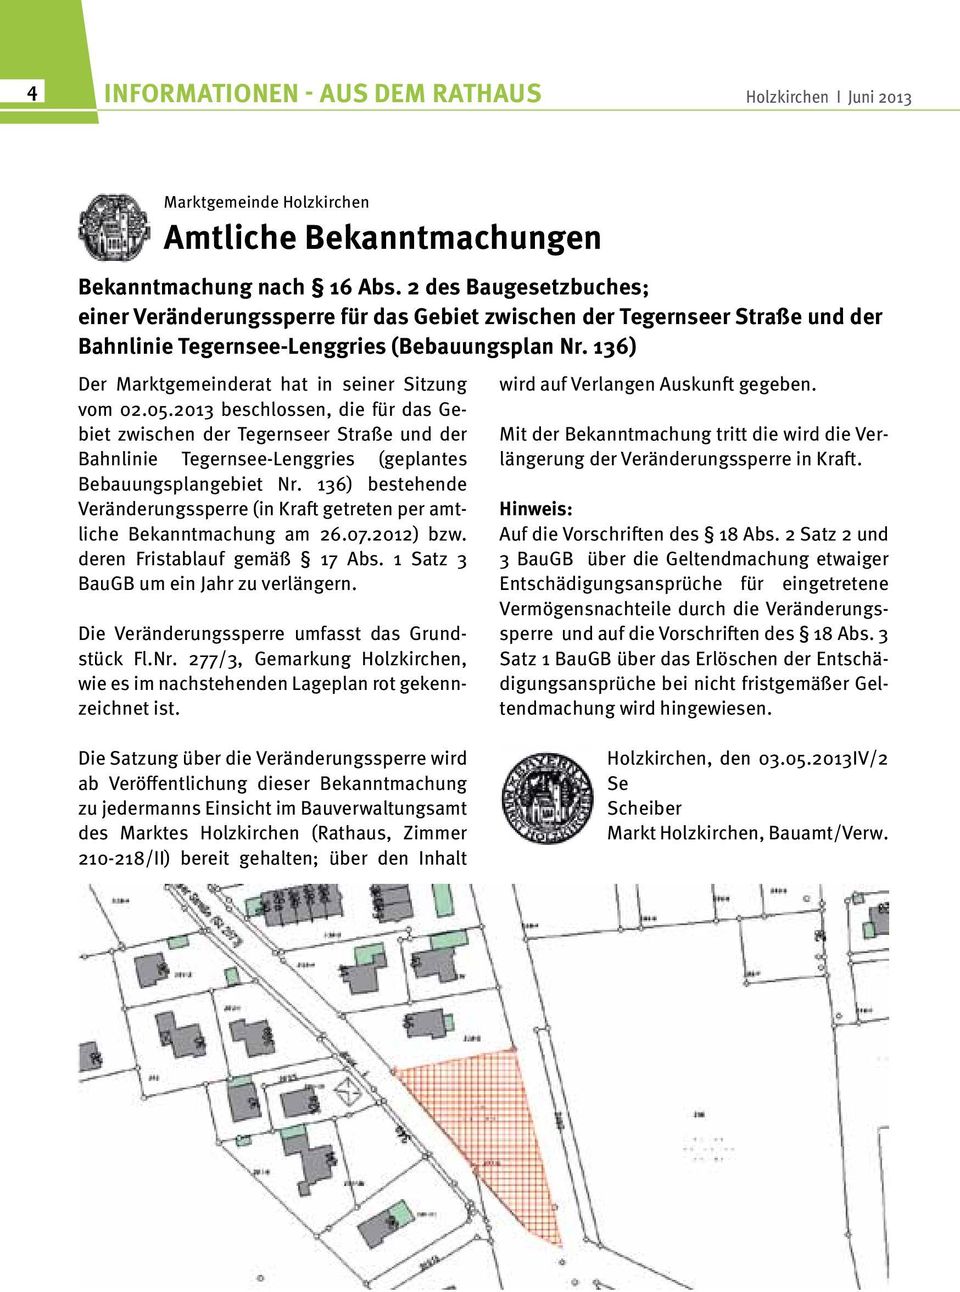 136) Der Marktgemeinderat hat in seiner Sitzung vom 02.05.2013 beschlossen, die für das Gebiet zwischen der Tegernseer Straße und der Bahnlinie Tegernsee-Lenggries (geplantes Bebauungsplangebiet Nr.